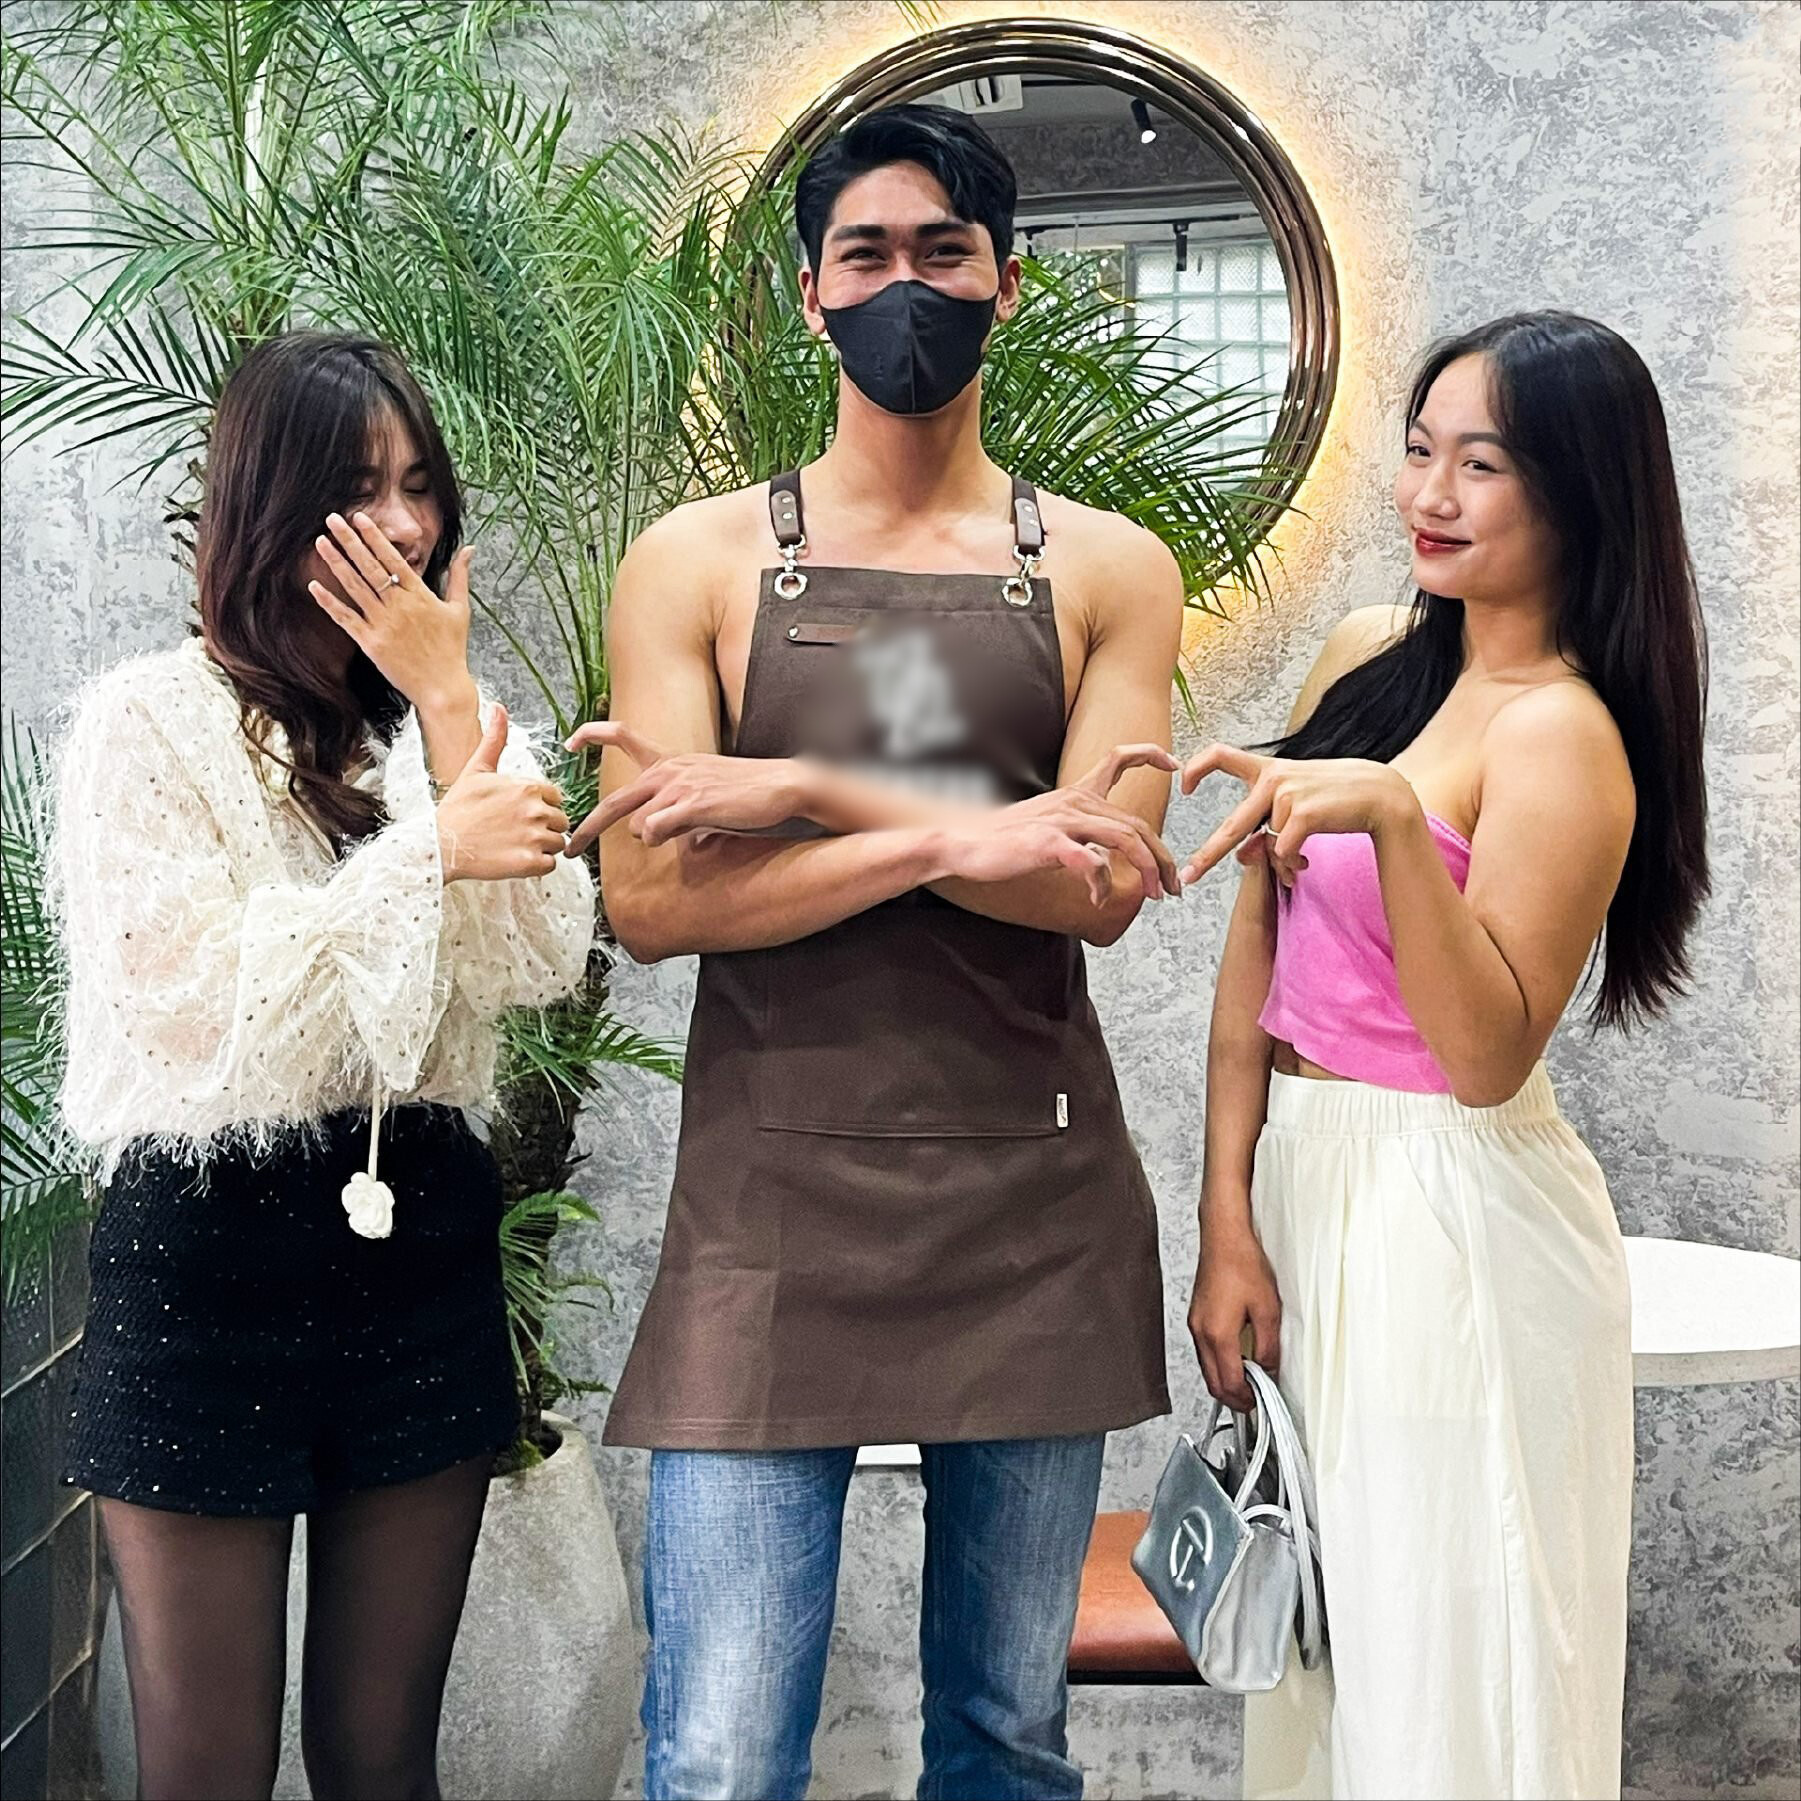 Tranh cãi nhân viên nam không mặc áo, phục vụ cà phê ở Hà Nội ngày 8/3 - ảnh 6